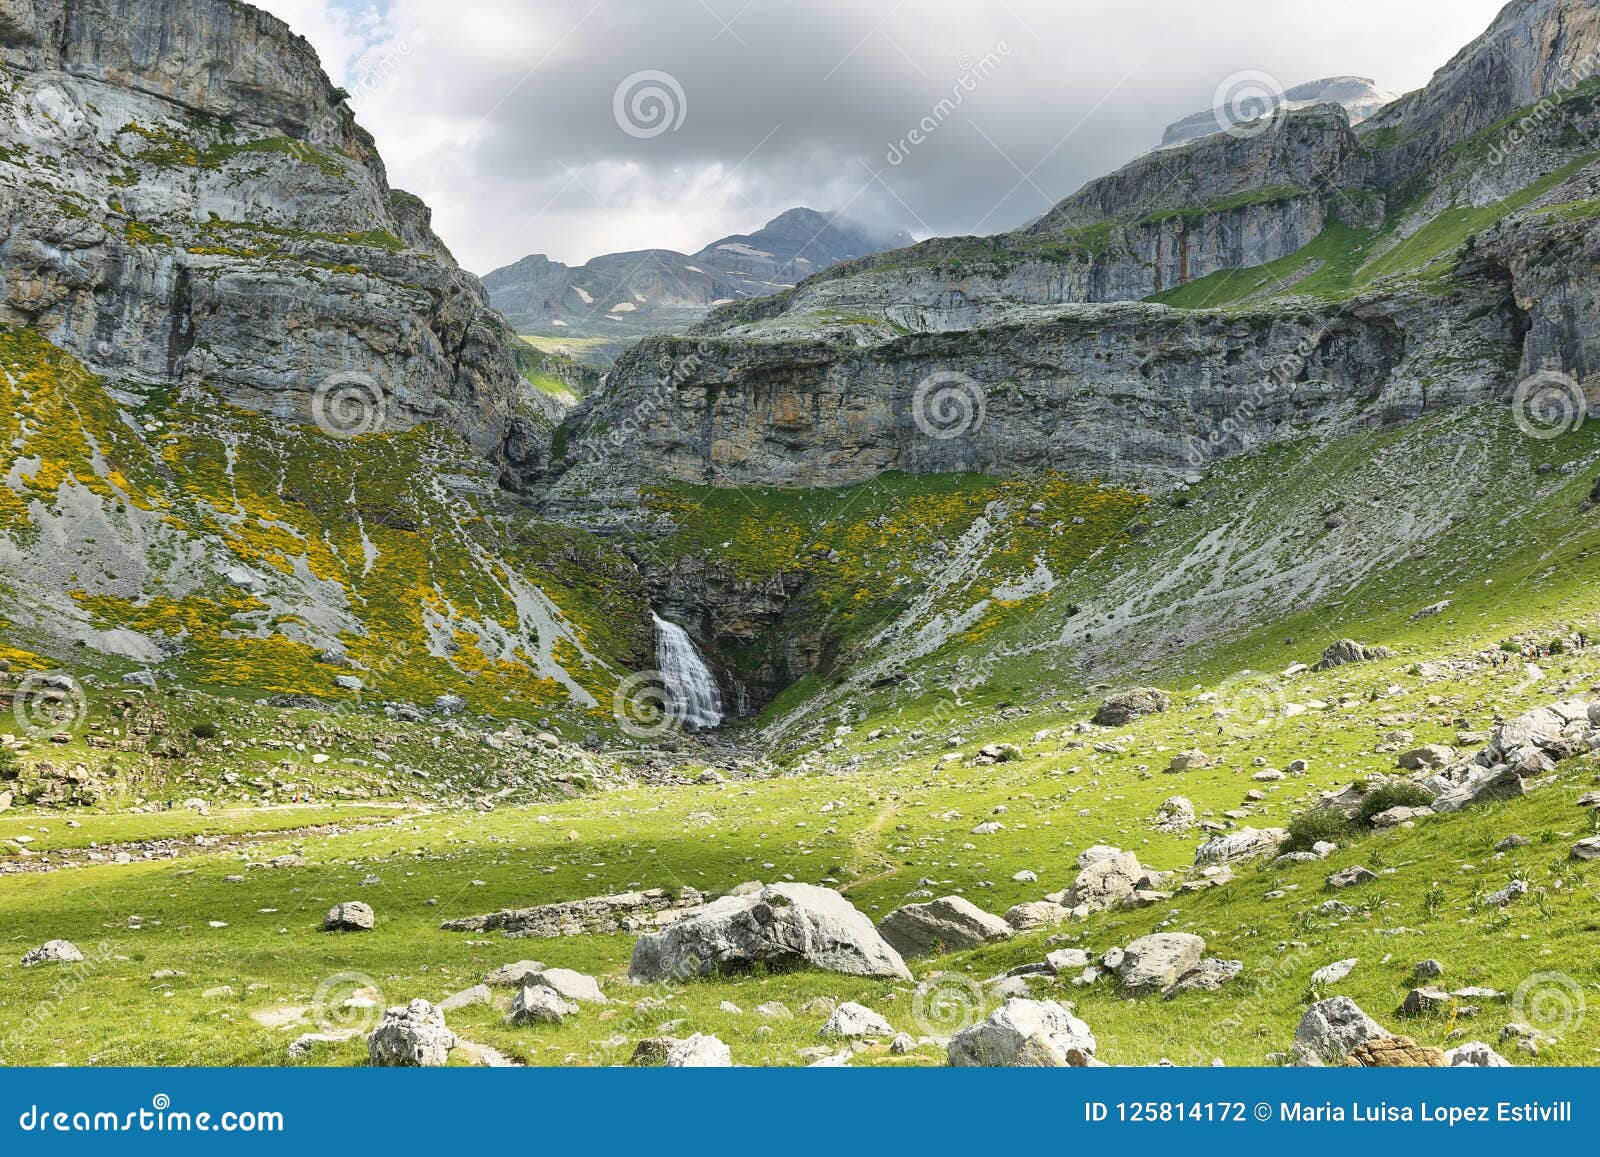 Ordesa National Park In Huesca Spain Stock Photo Image Of Peak People